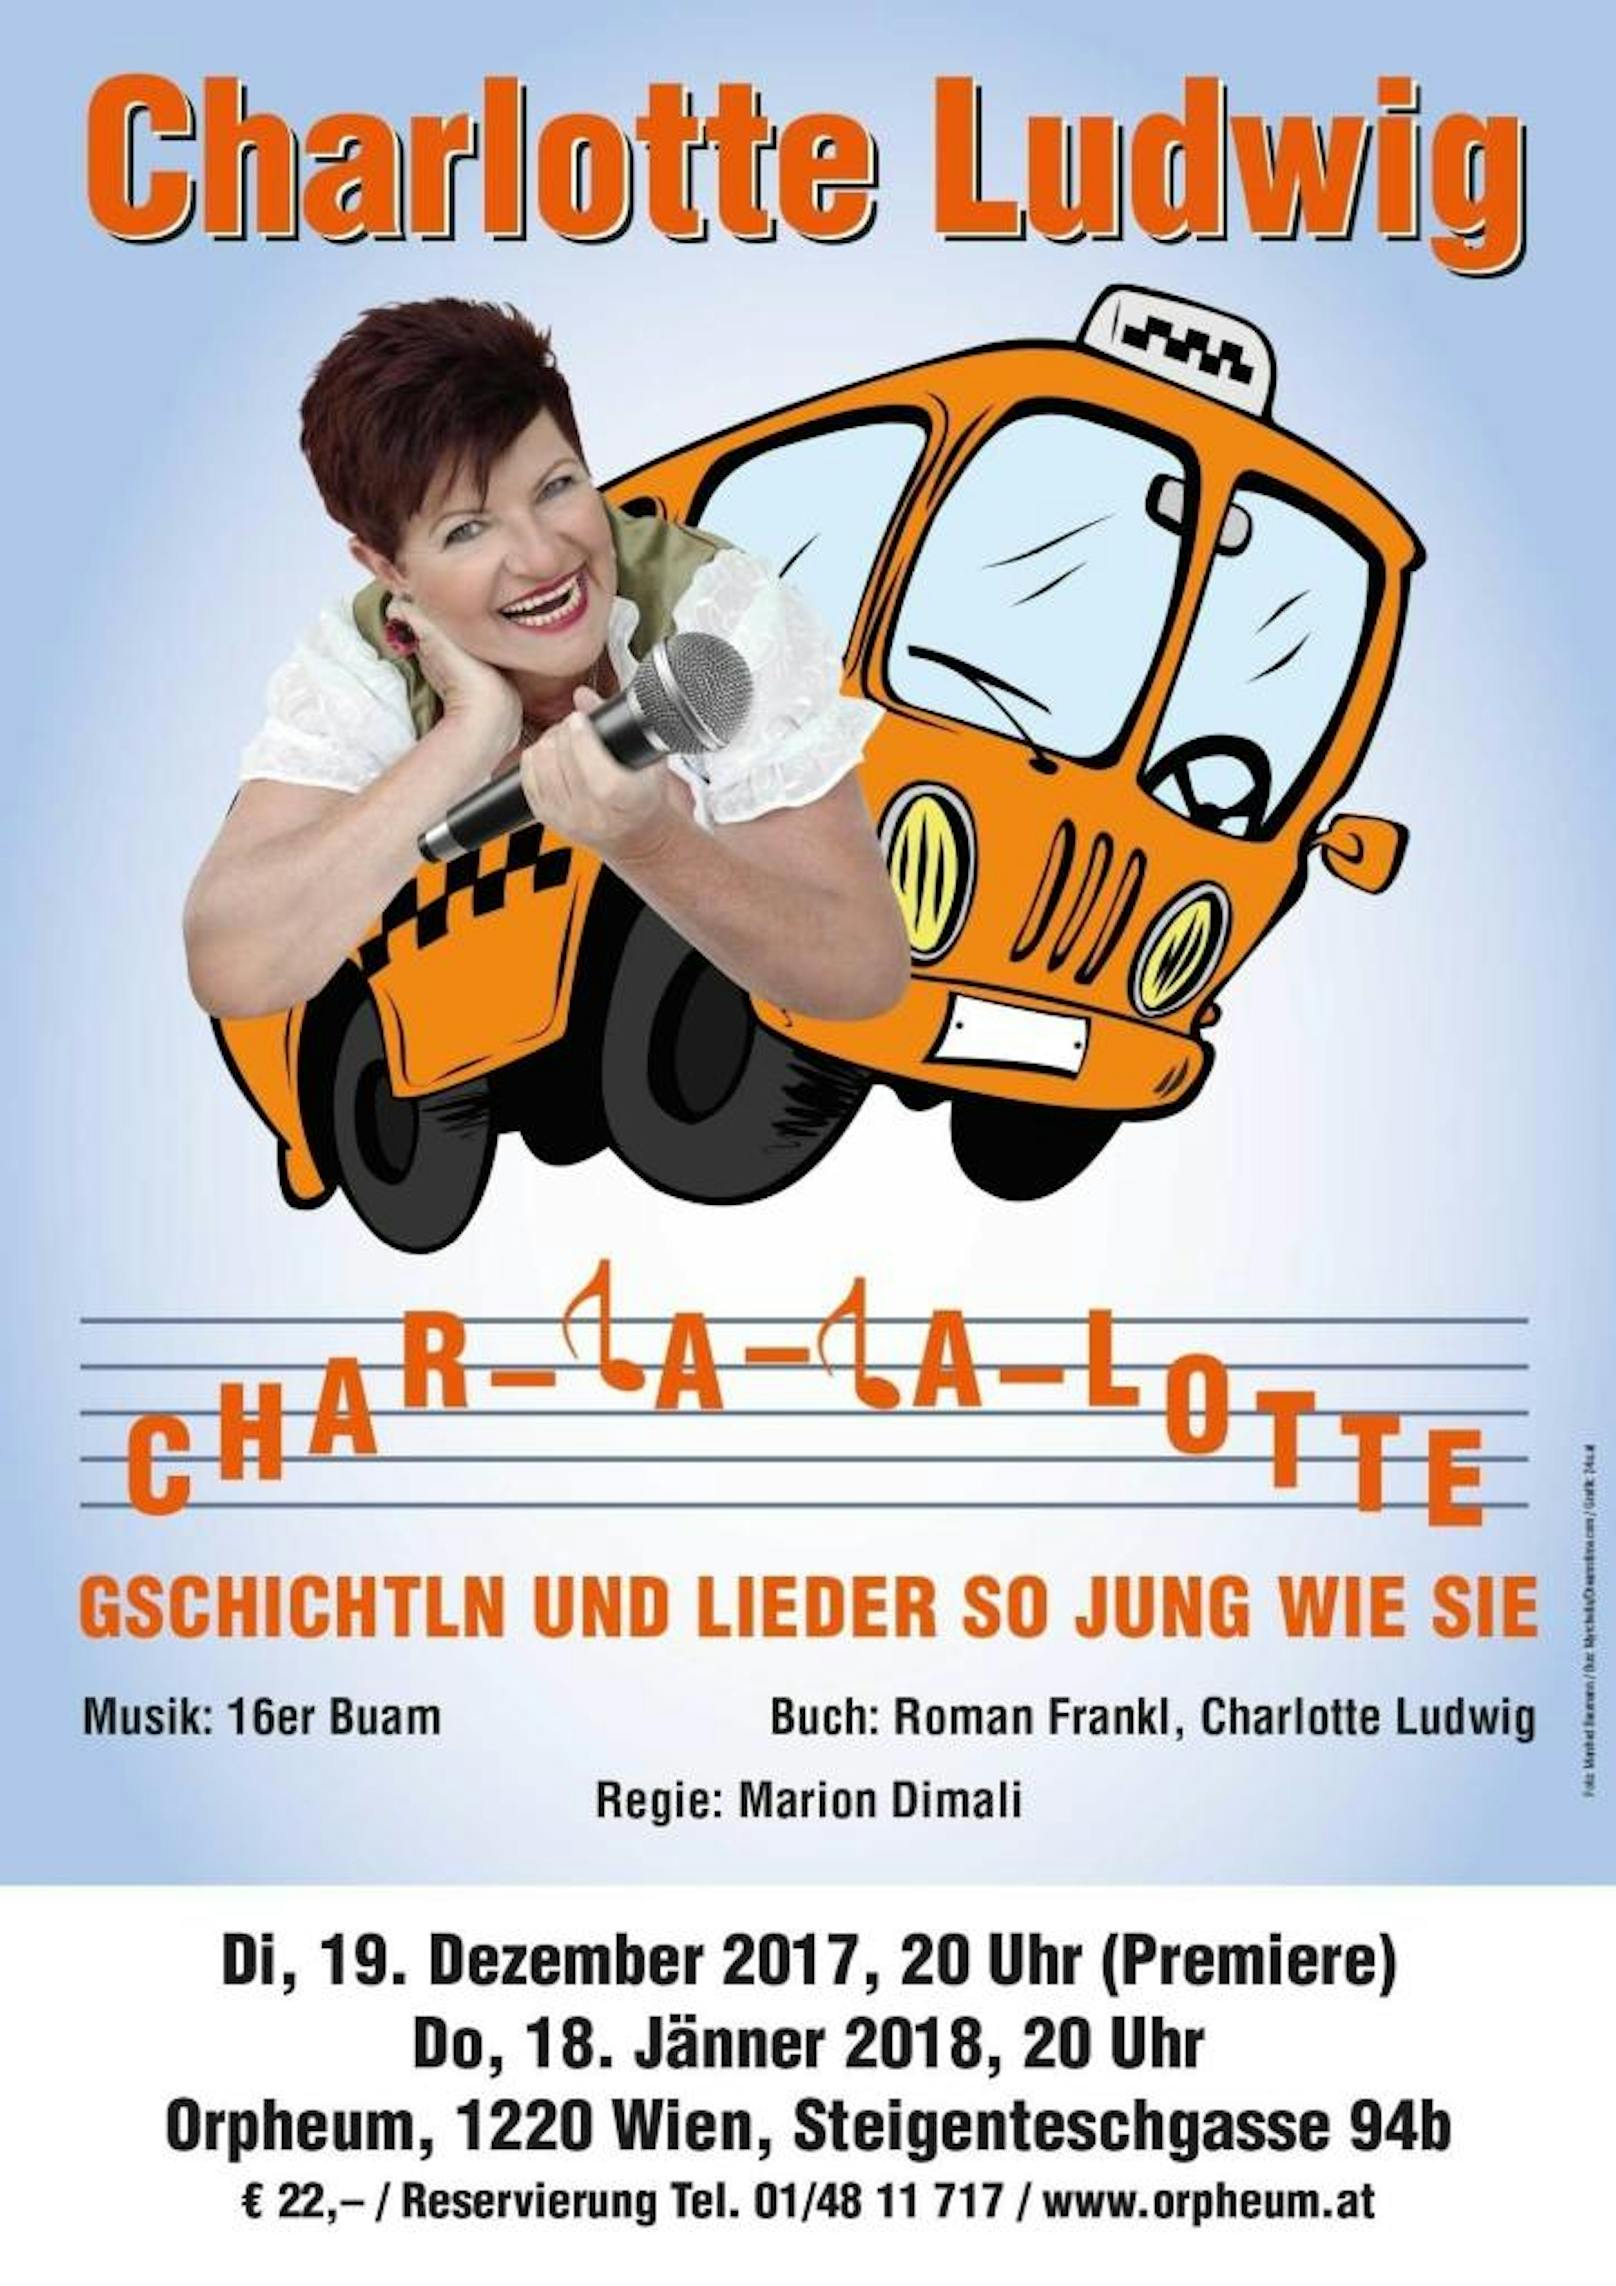 Char-la-la-lotte - ein Kabarett- und Liederabend mit Charlotte Ludwig 